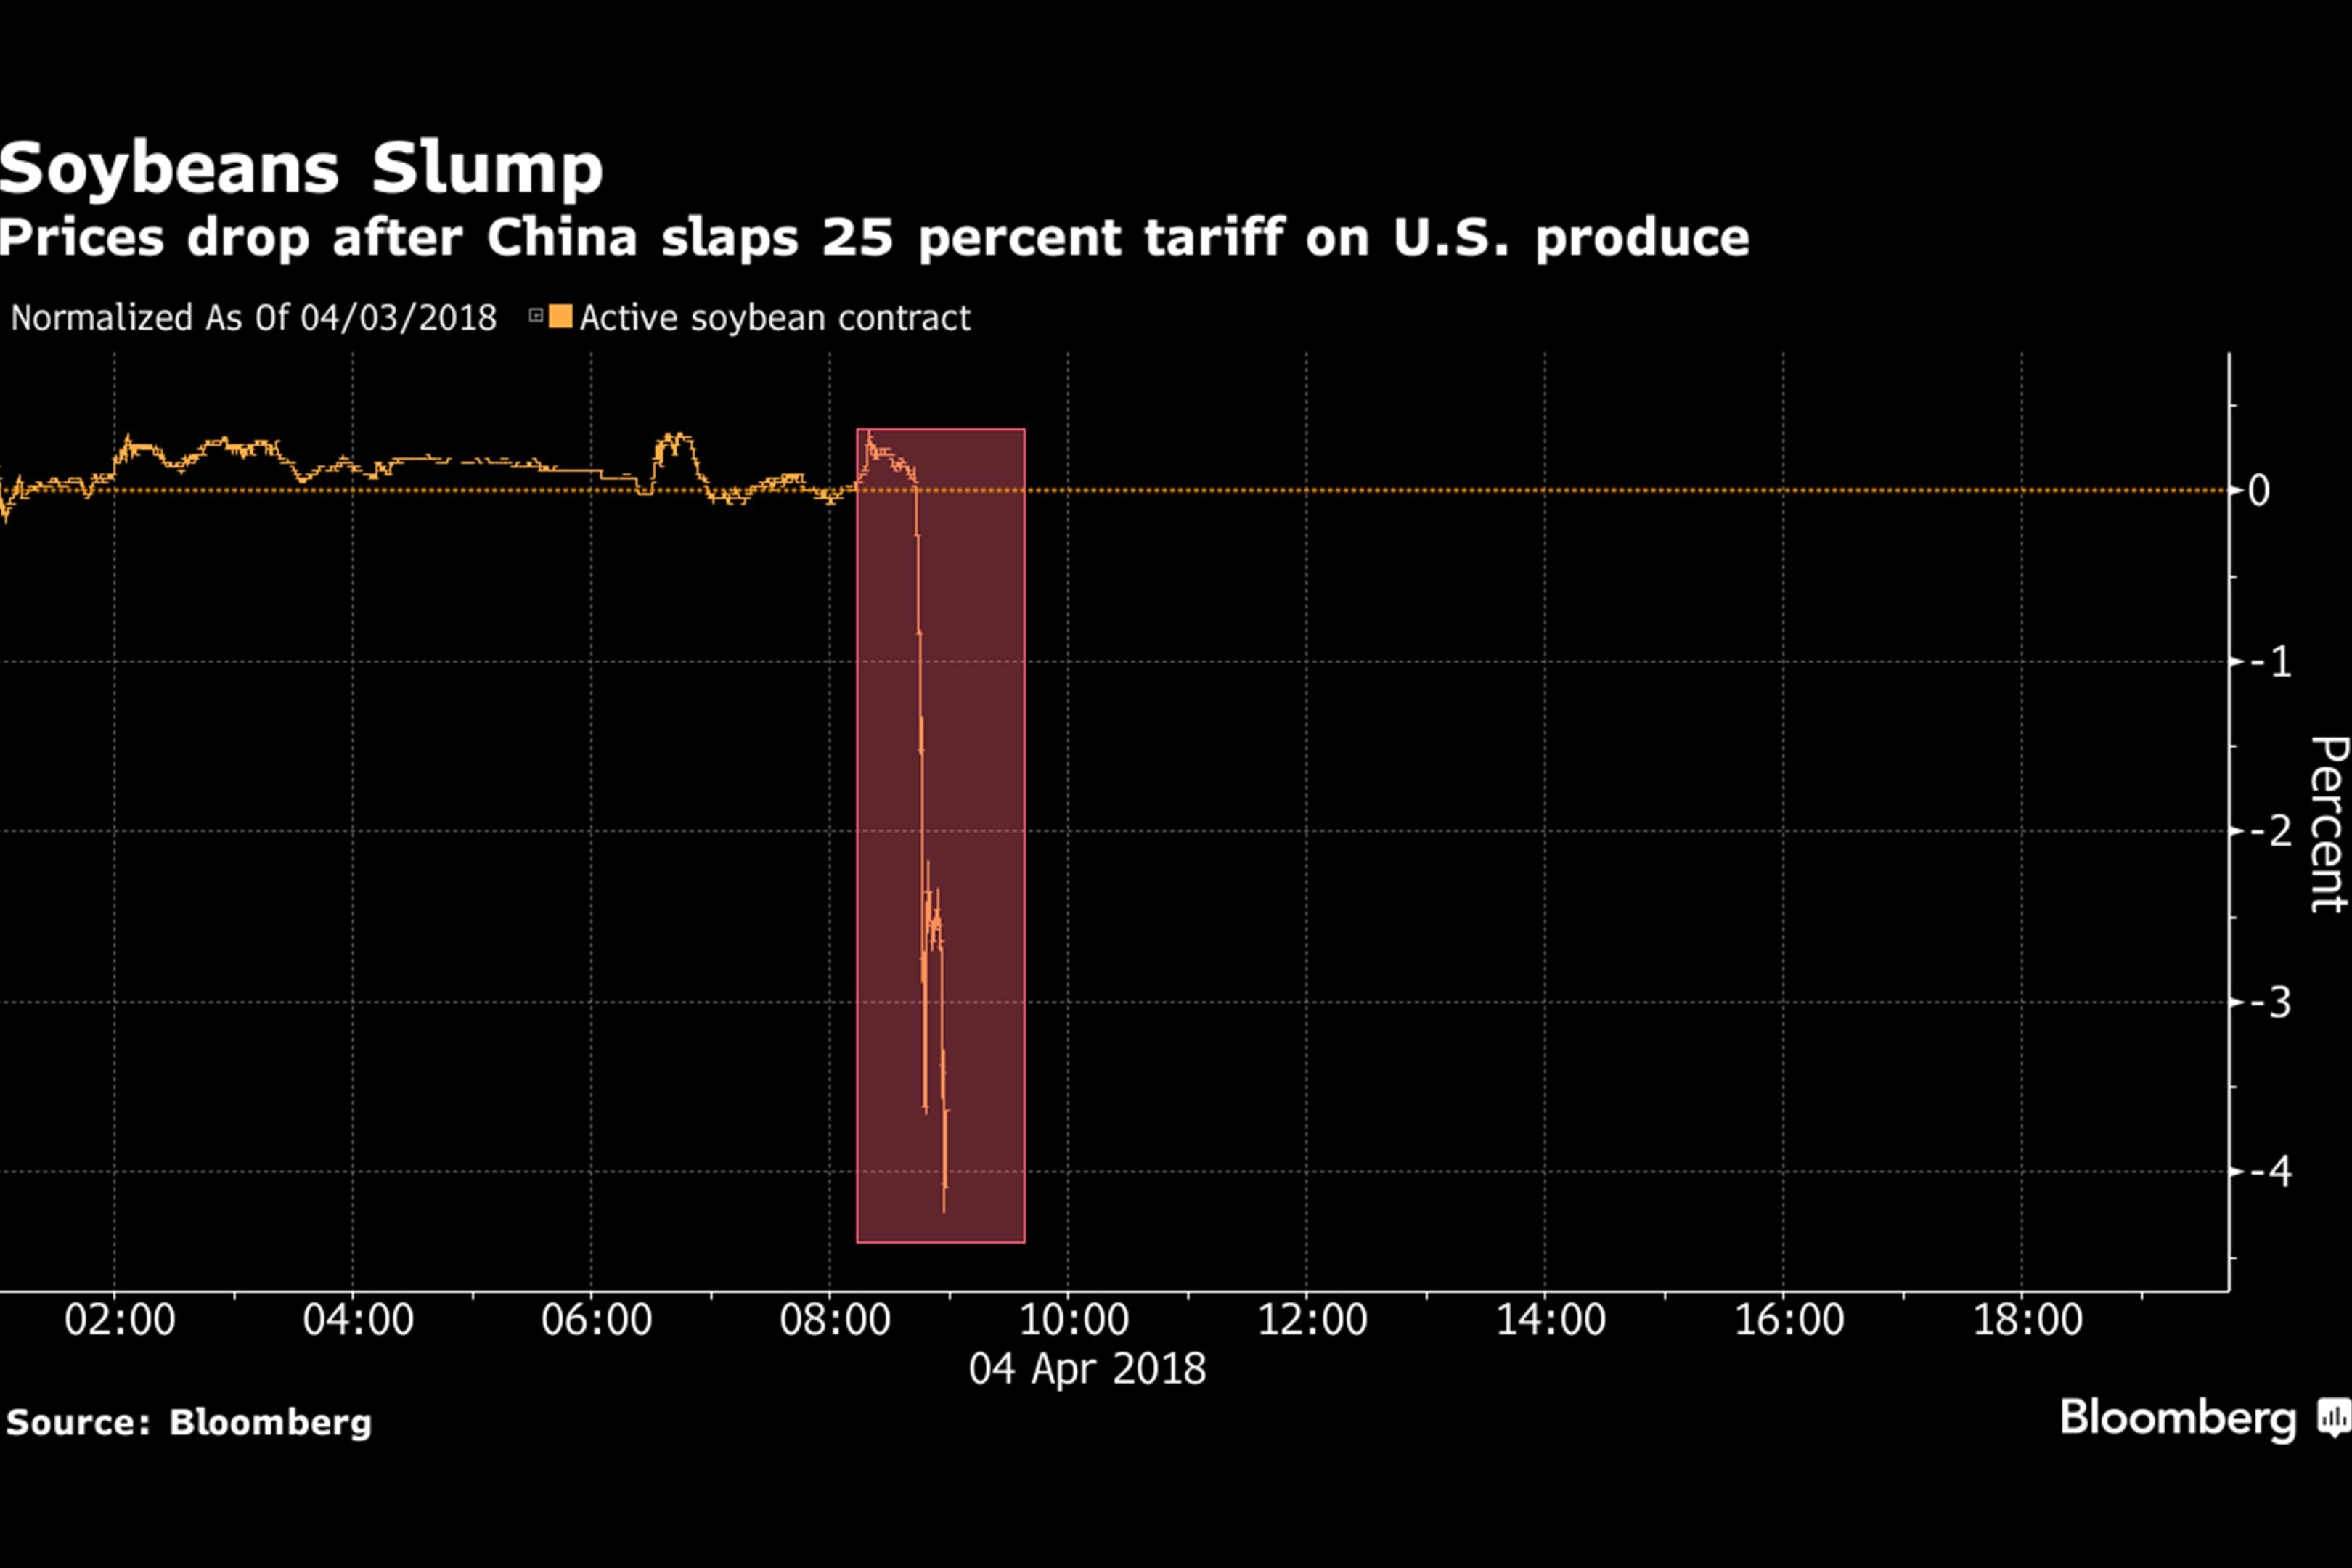 Queda percentual no preço da soja após anúncio da retaliação da China aos Estados Unidos no dia 04 de abril de 2018